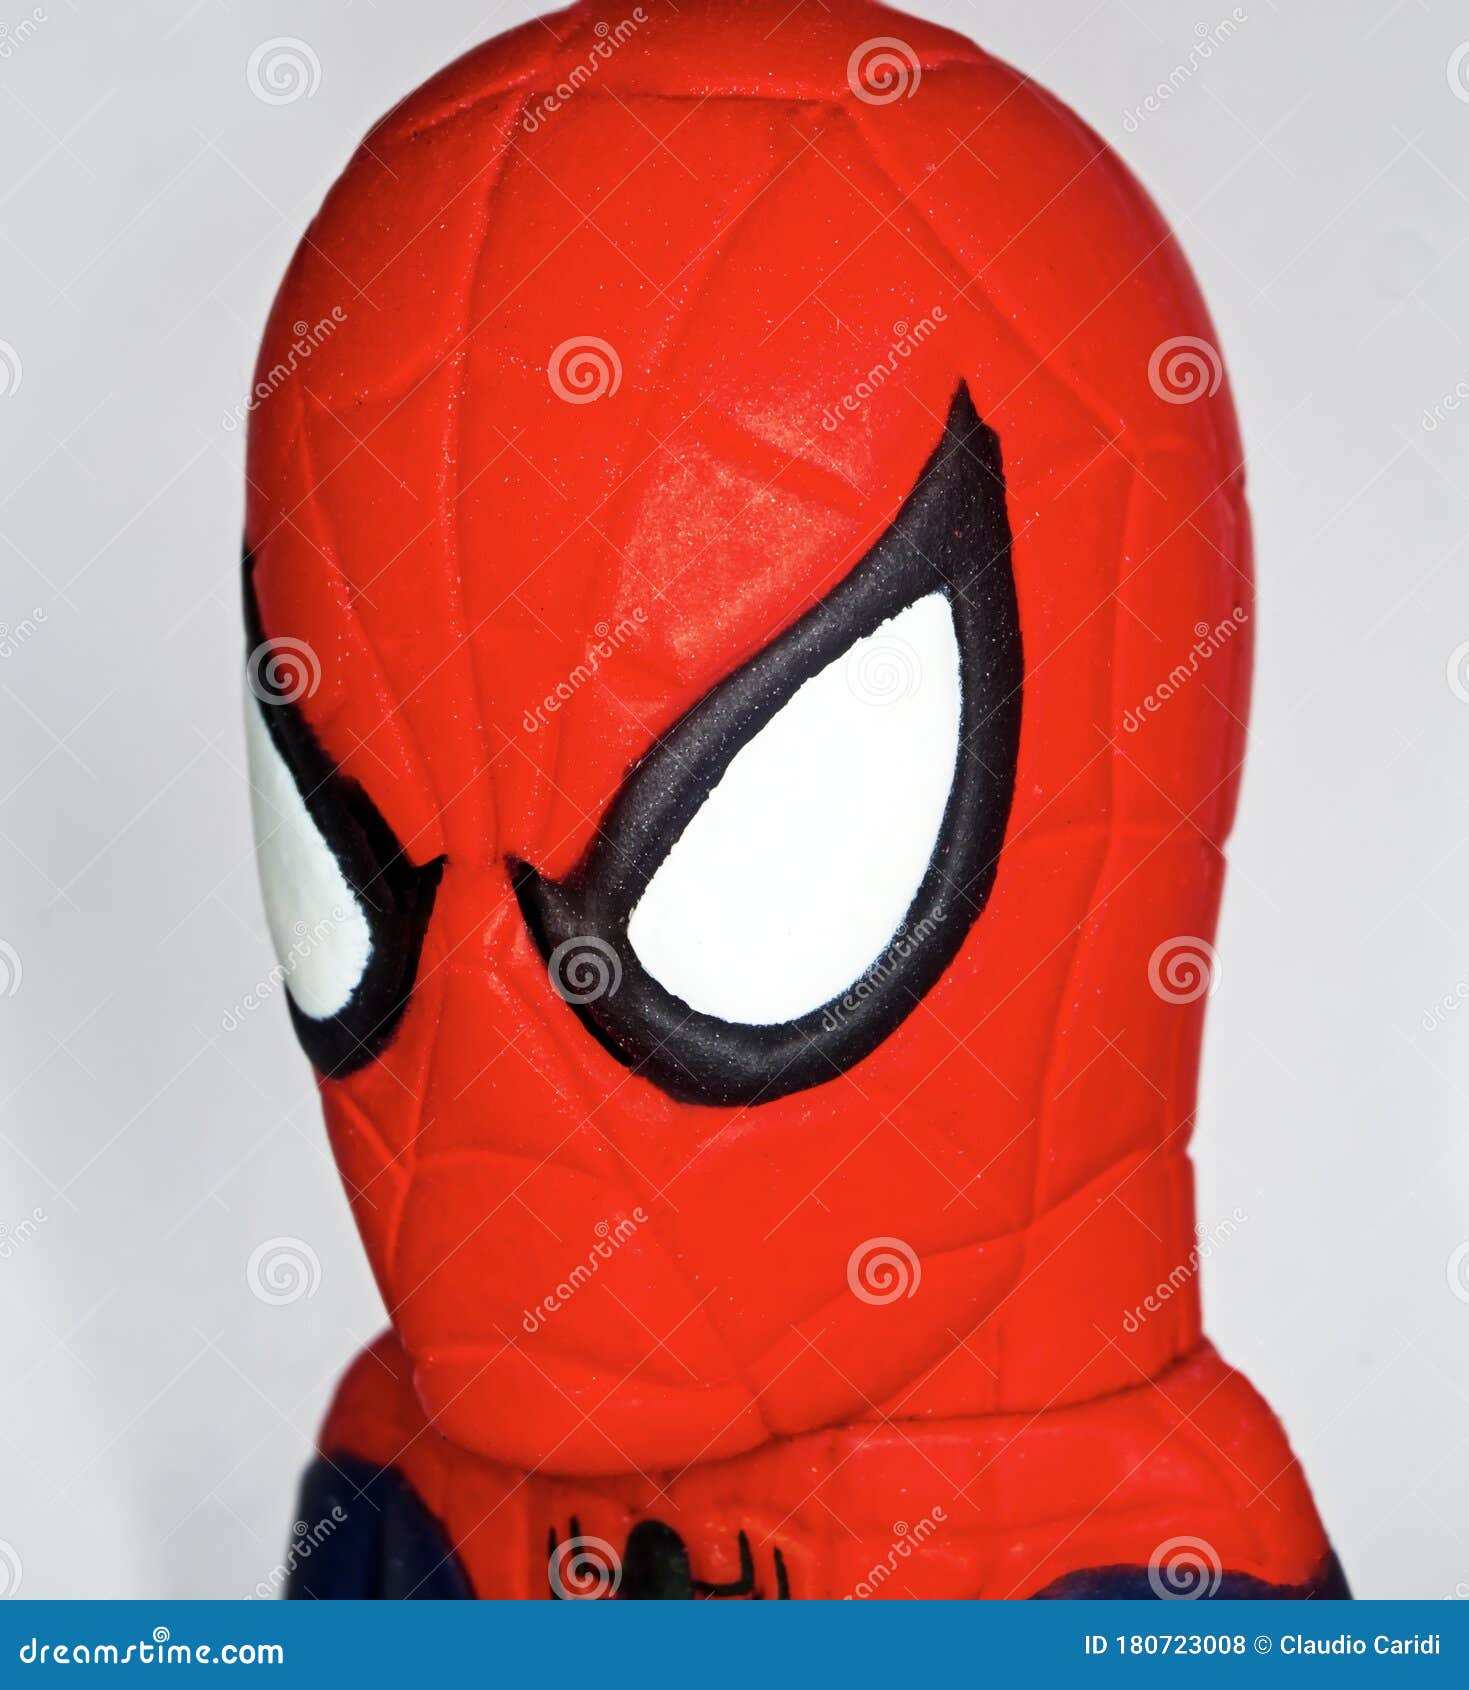 Rubber Spider Man USB Key White Background – Bạn có thích anh hùng Nhện Đen không? Nếu có, hãy đến và xem hình ảnh của chiếc USB Nhện Đen hình con nhện từ nhựa cao cấp áp dụng công nghệ cao và ngay trên nền trắng tinh khiết để mang lại cho bạn những chi tiết rõ nét.